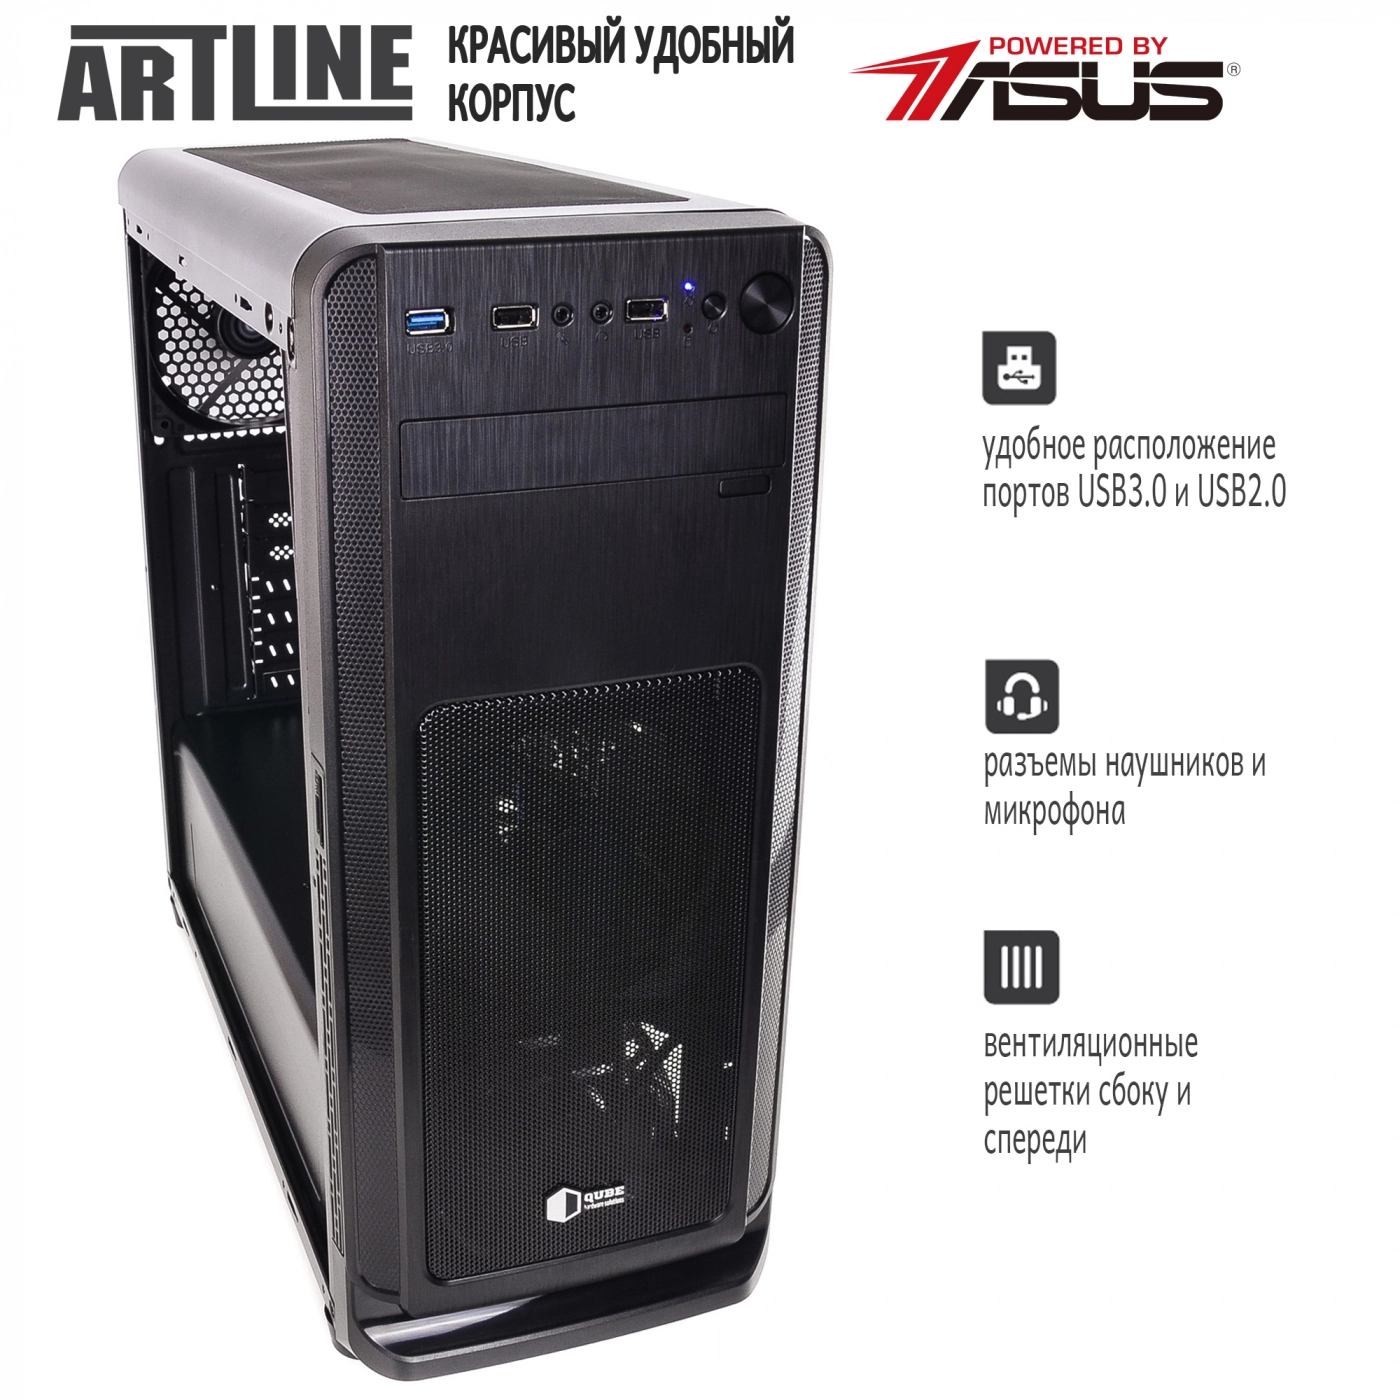 Купить Сервер ARTLINE Business T83v01 - фото 4